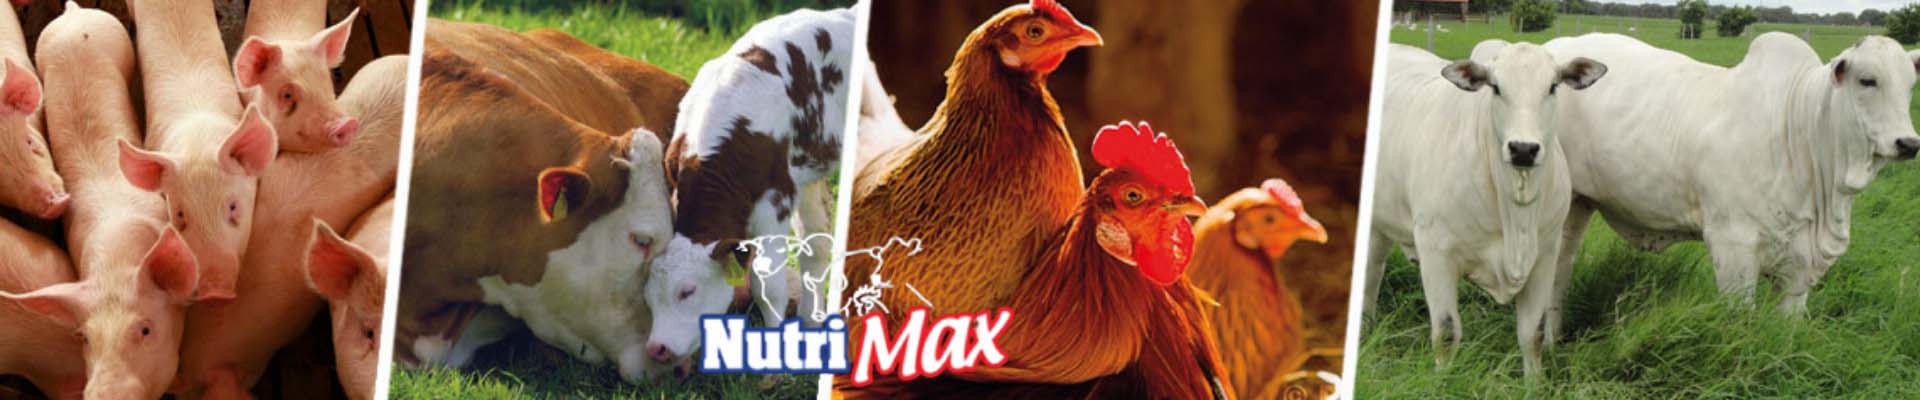 comercialización productos nutrición animal